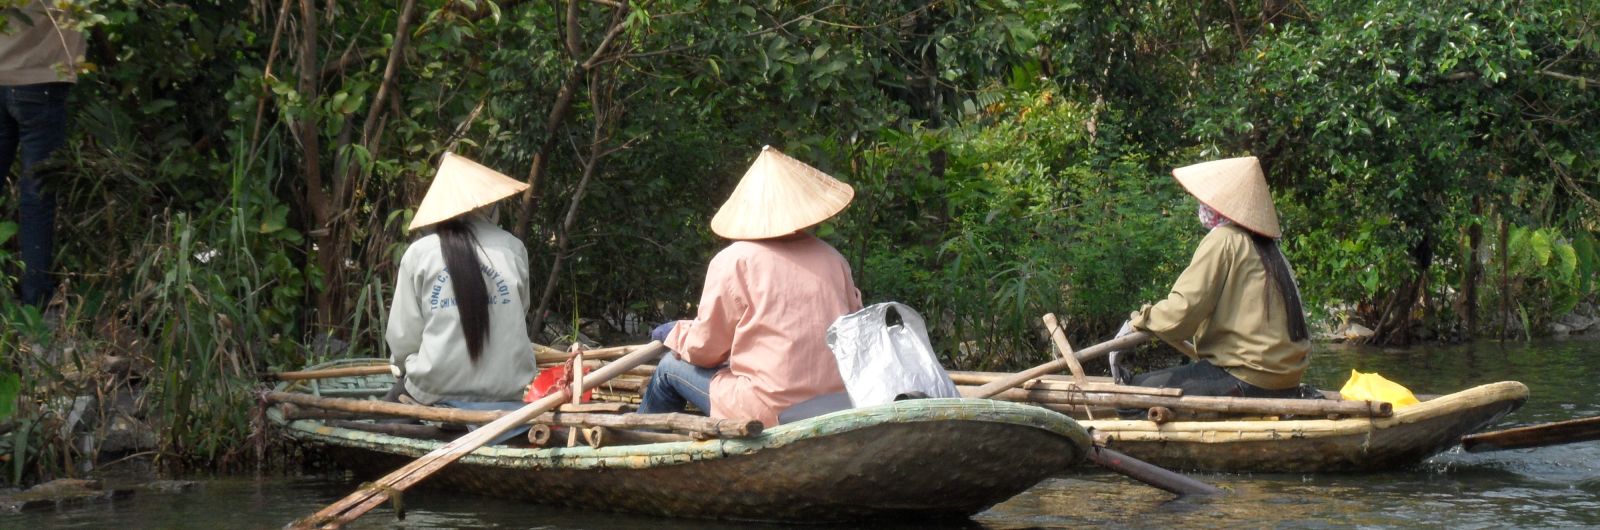 vietnam señoras barcas